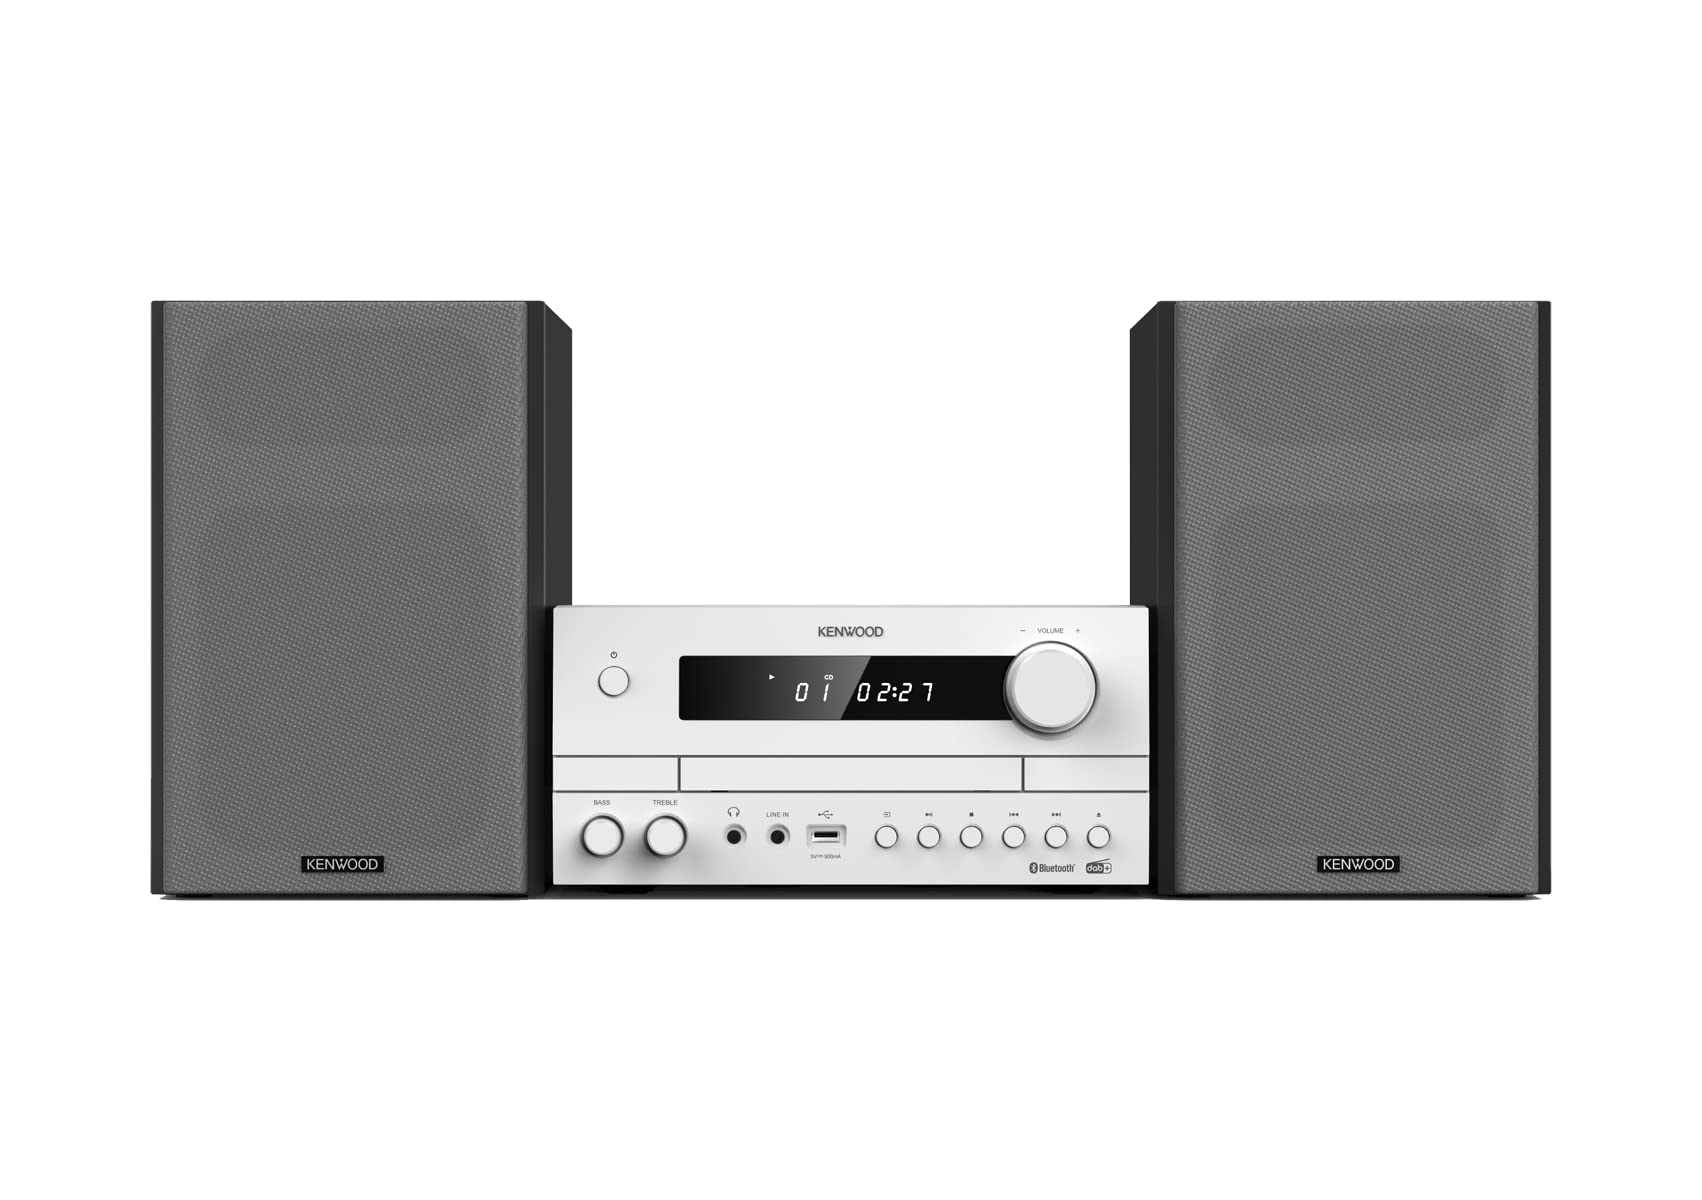 Kenwood M-822DAB - Micro HiFi-System mit 2 x 50 Watt RMS, CD, USB, DAB+ & Bluetooth Audio-Streaming, Weiß